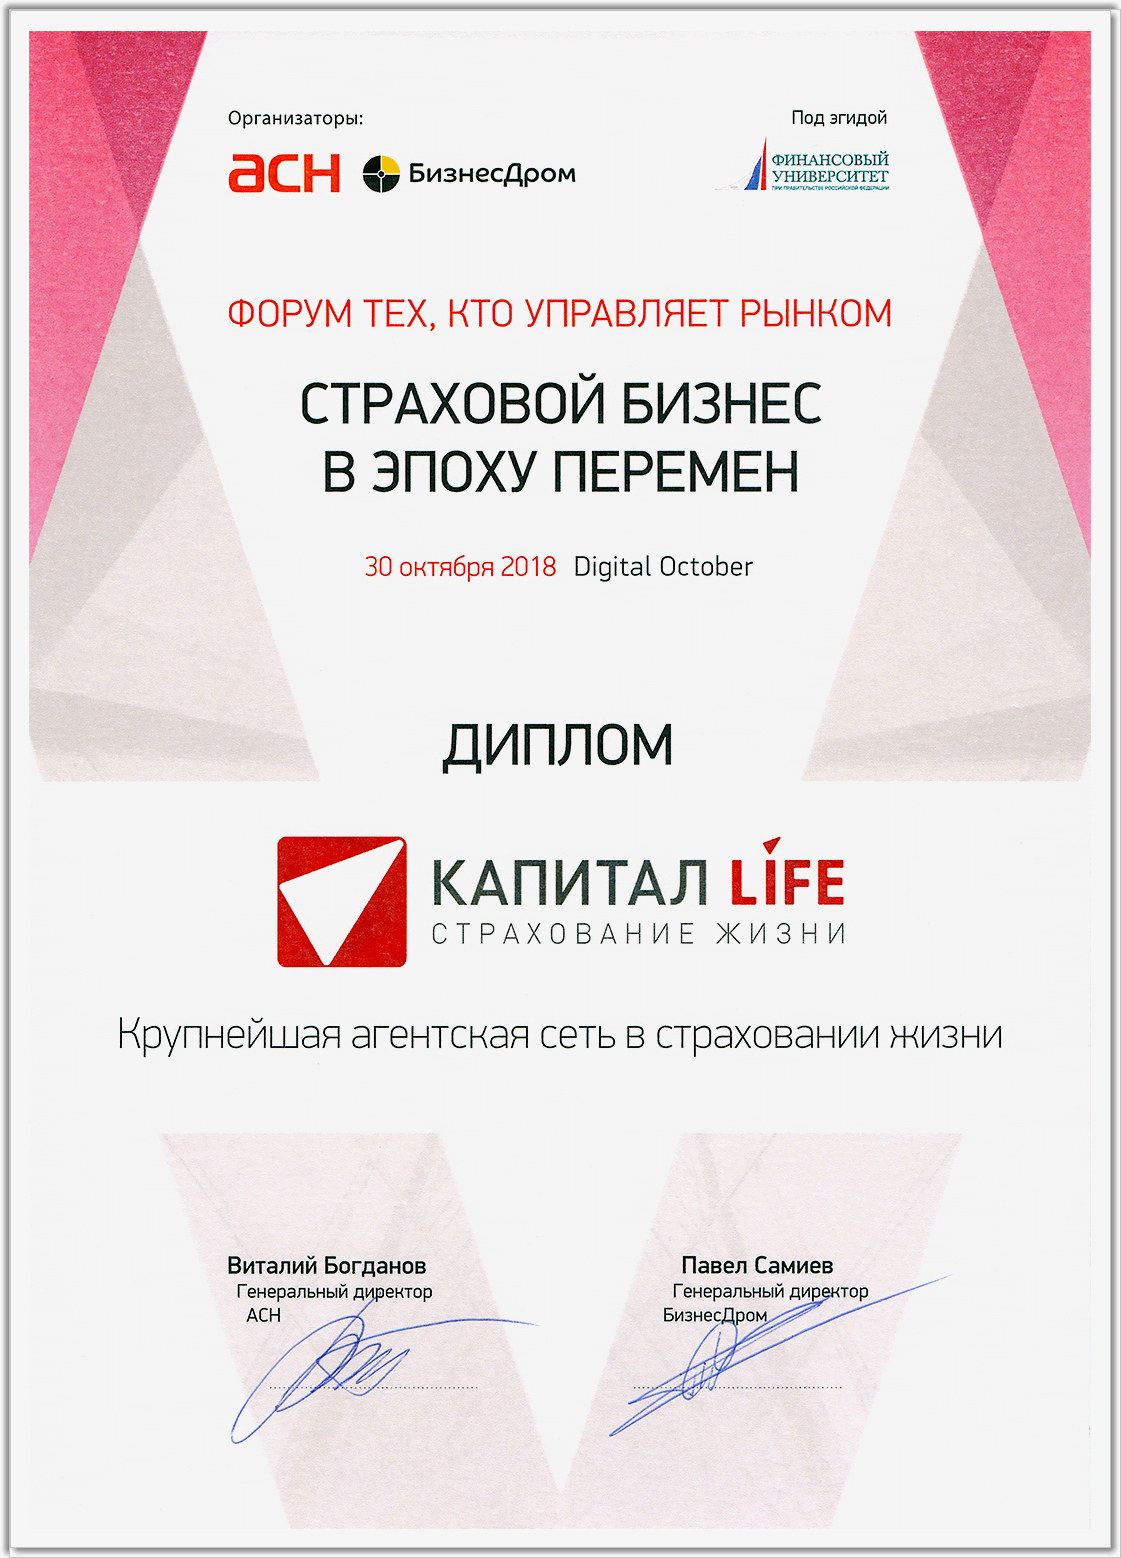 КАПИТАЛ LIFE была признана крупнейшей агентской компанией по страхованию жизни в России